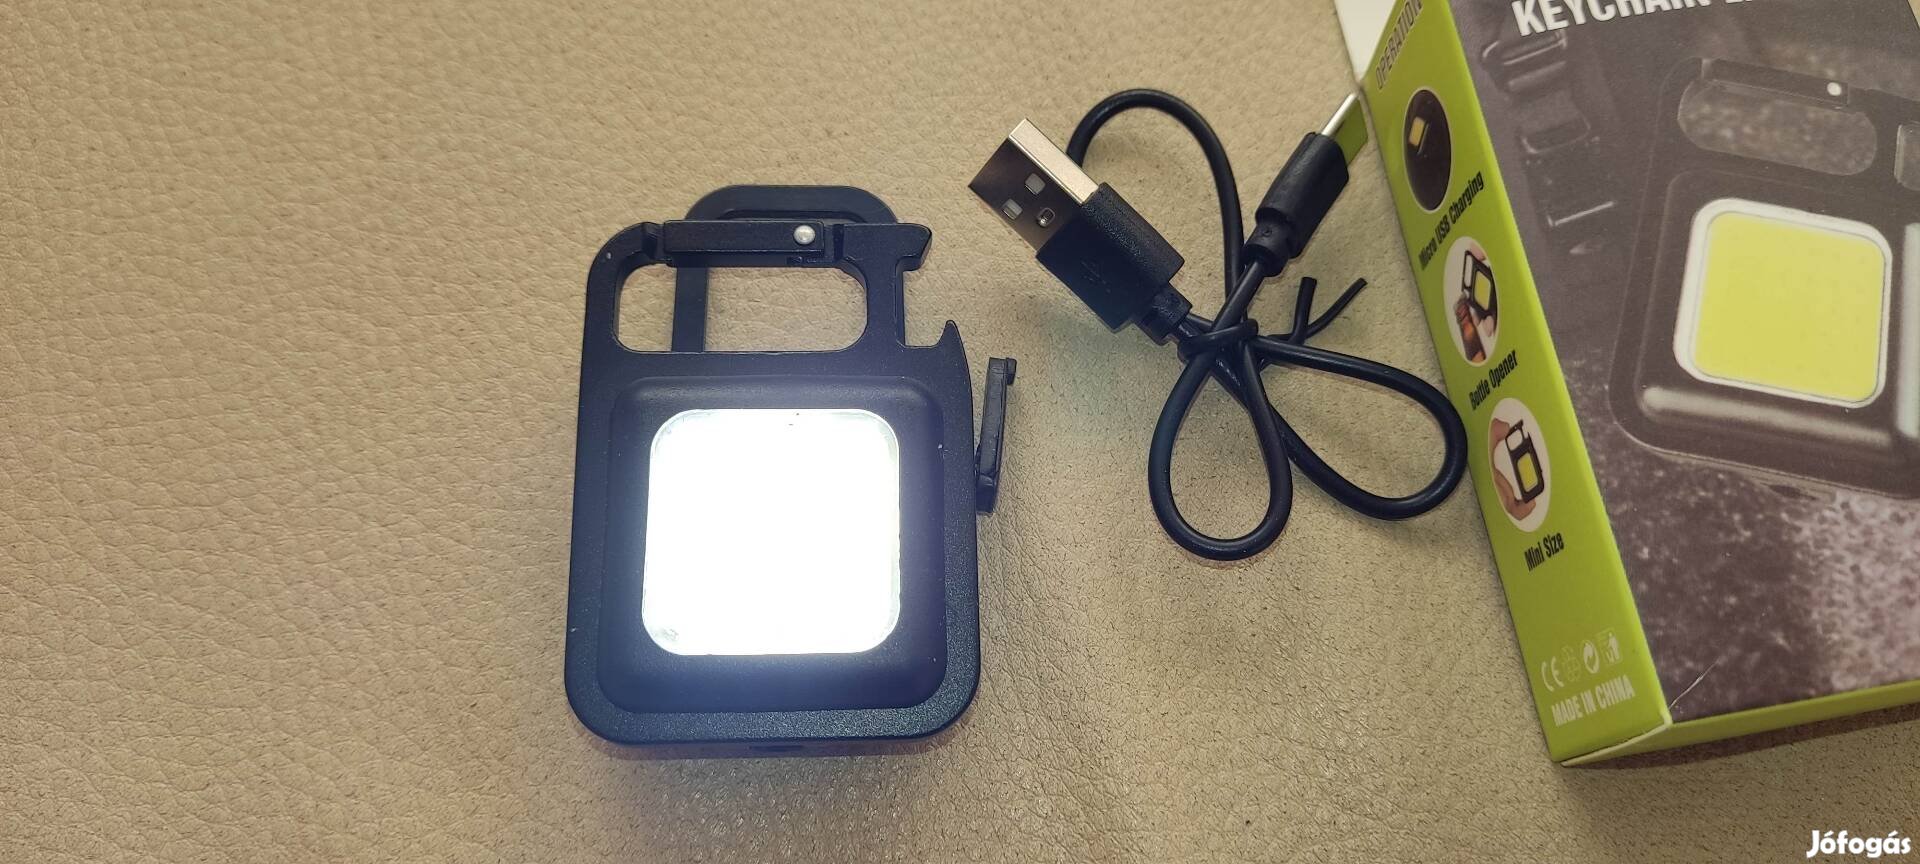 Cob nagy fényerejű hosszú ideig világító beépített akku USB horgász